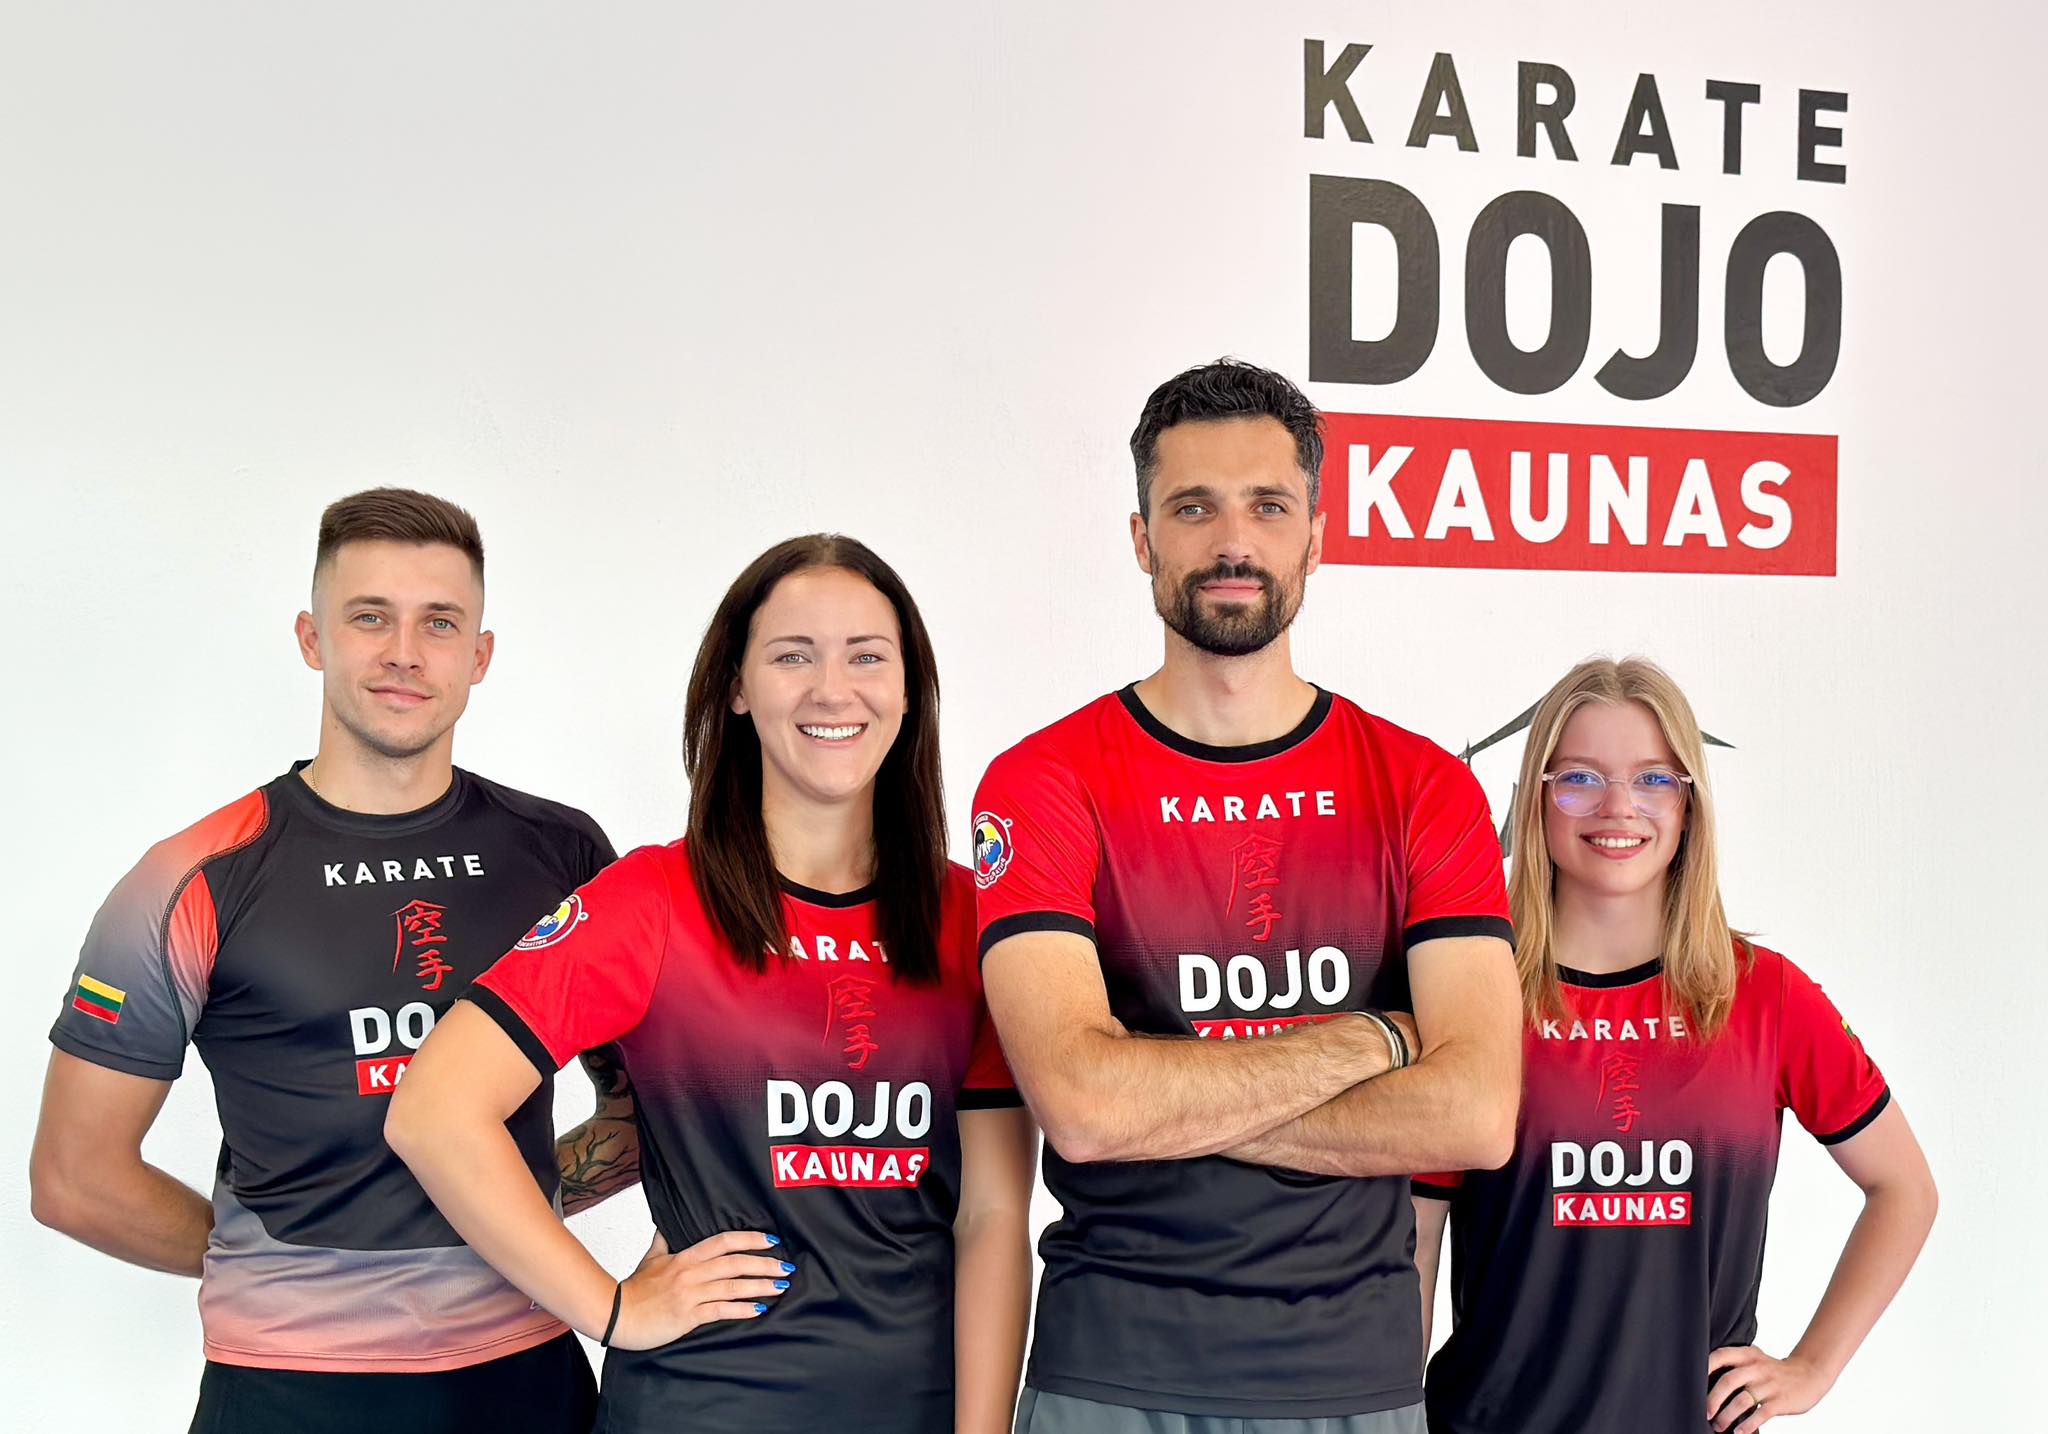 Karate-Dojo-Kaunas-1.jpg